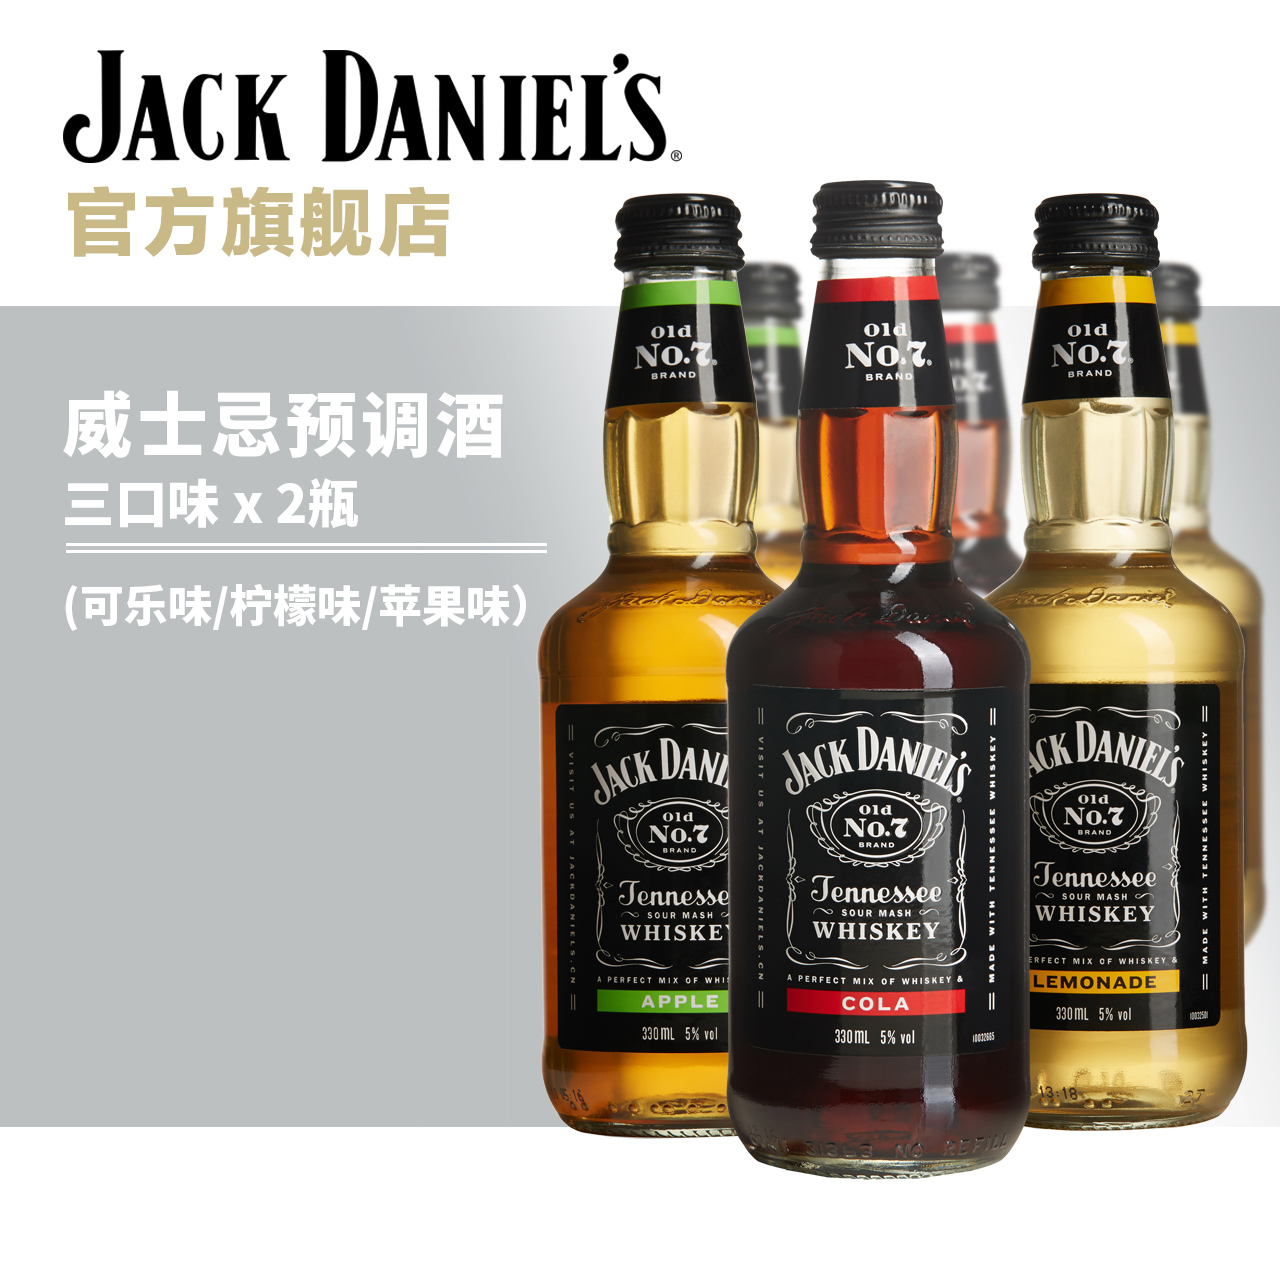 杰克丹尼威士忌预调酒-柠檬味苹果味可乐味6瓶装官方正品鸡尾酒